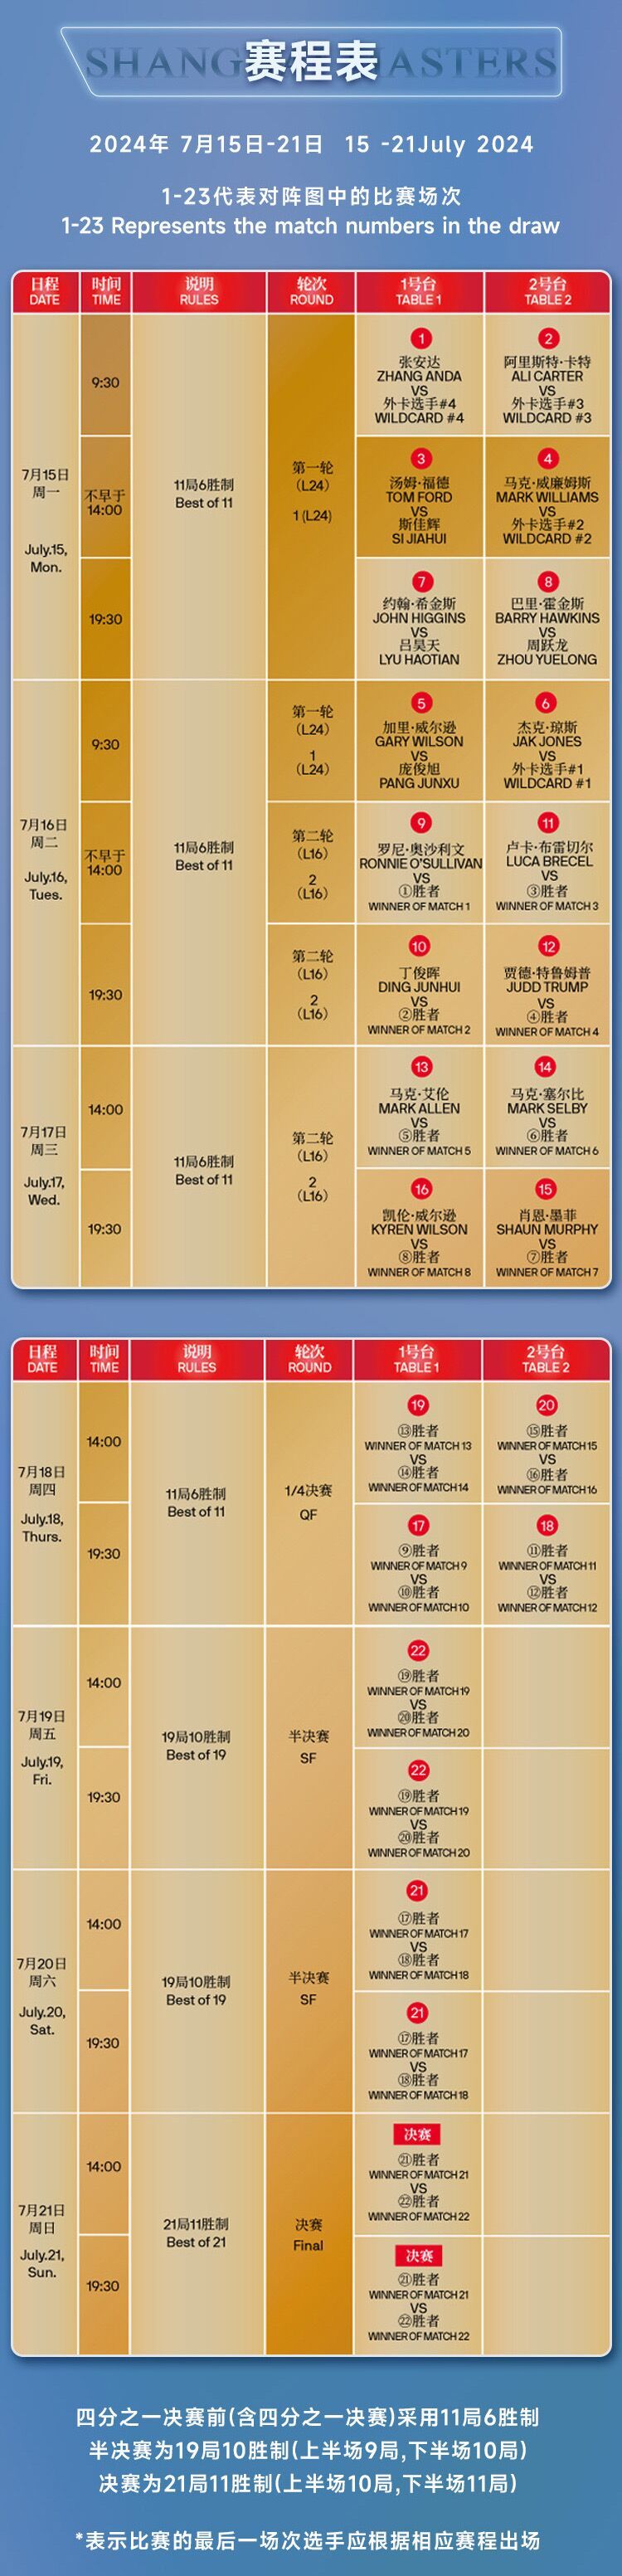 斯诺克上海大师赛2024赛程表图片